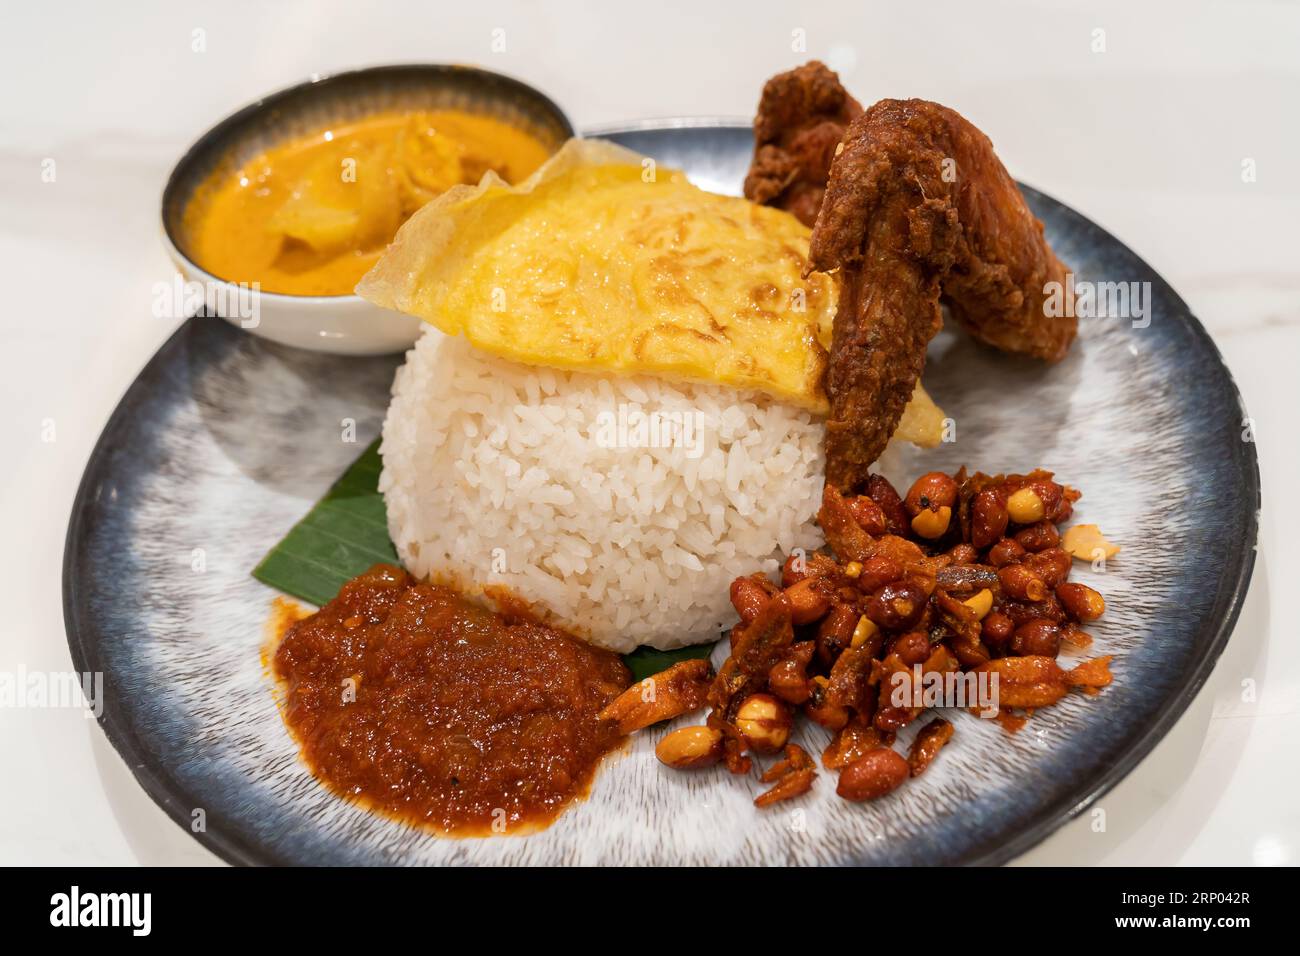 Cuisine asiatique Nasi Lemak est un plat de riz infusé avec du lait de coco. Servi avec sambal, aile de poulet frite, cacahuète frite, œuf frit avec sauce au curry. Banque D'Images